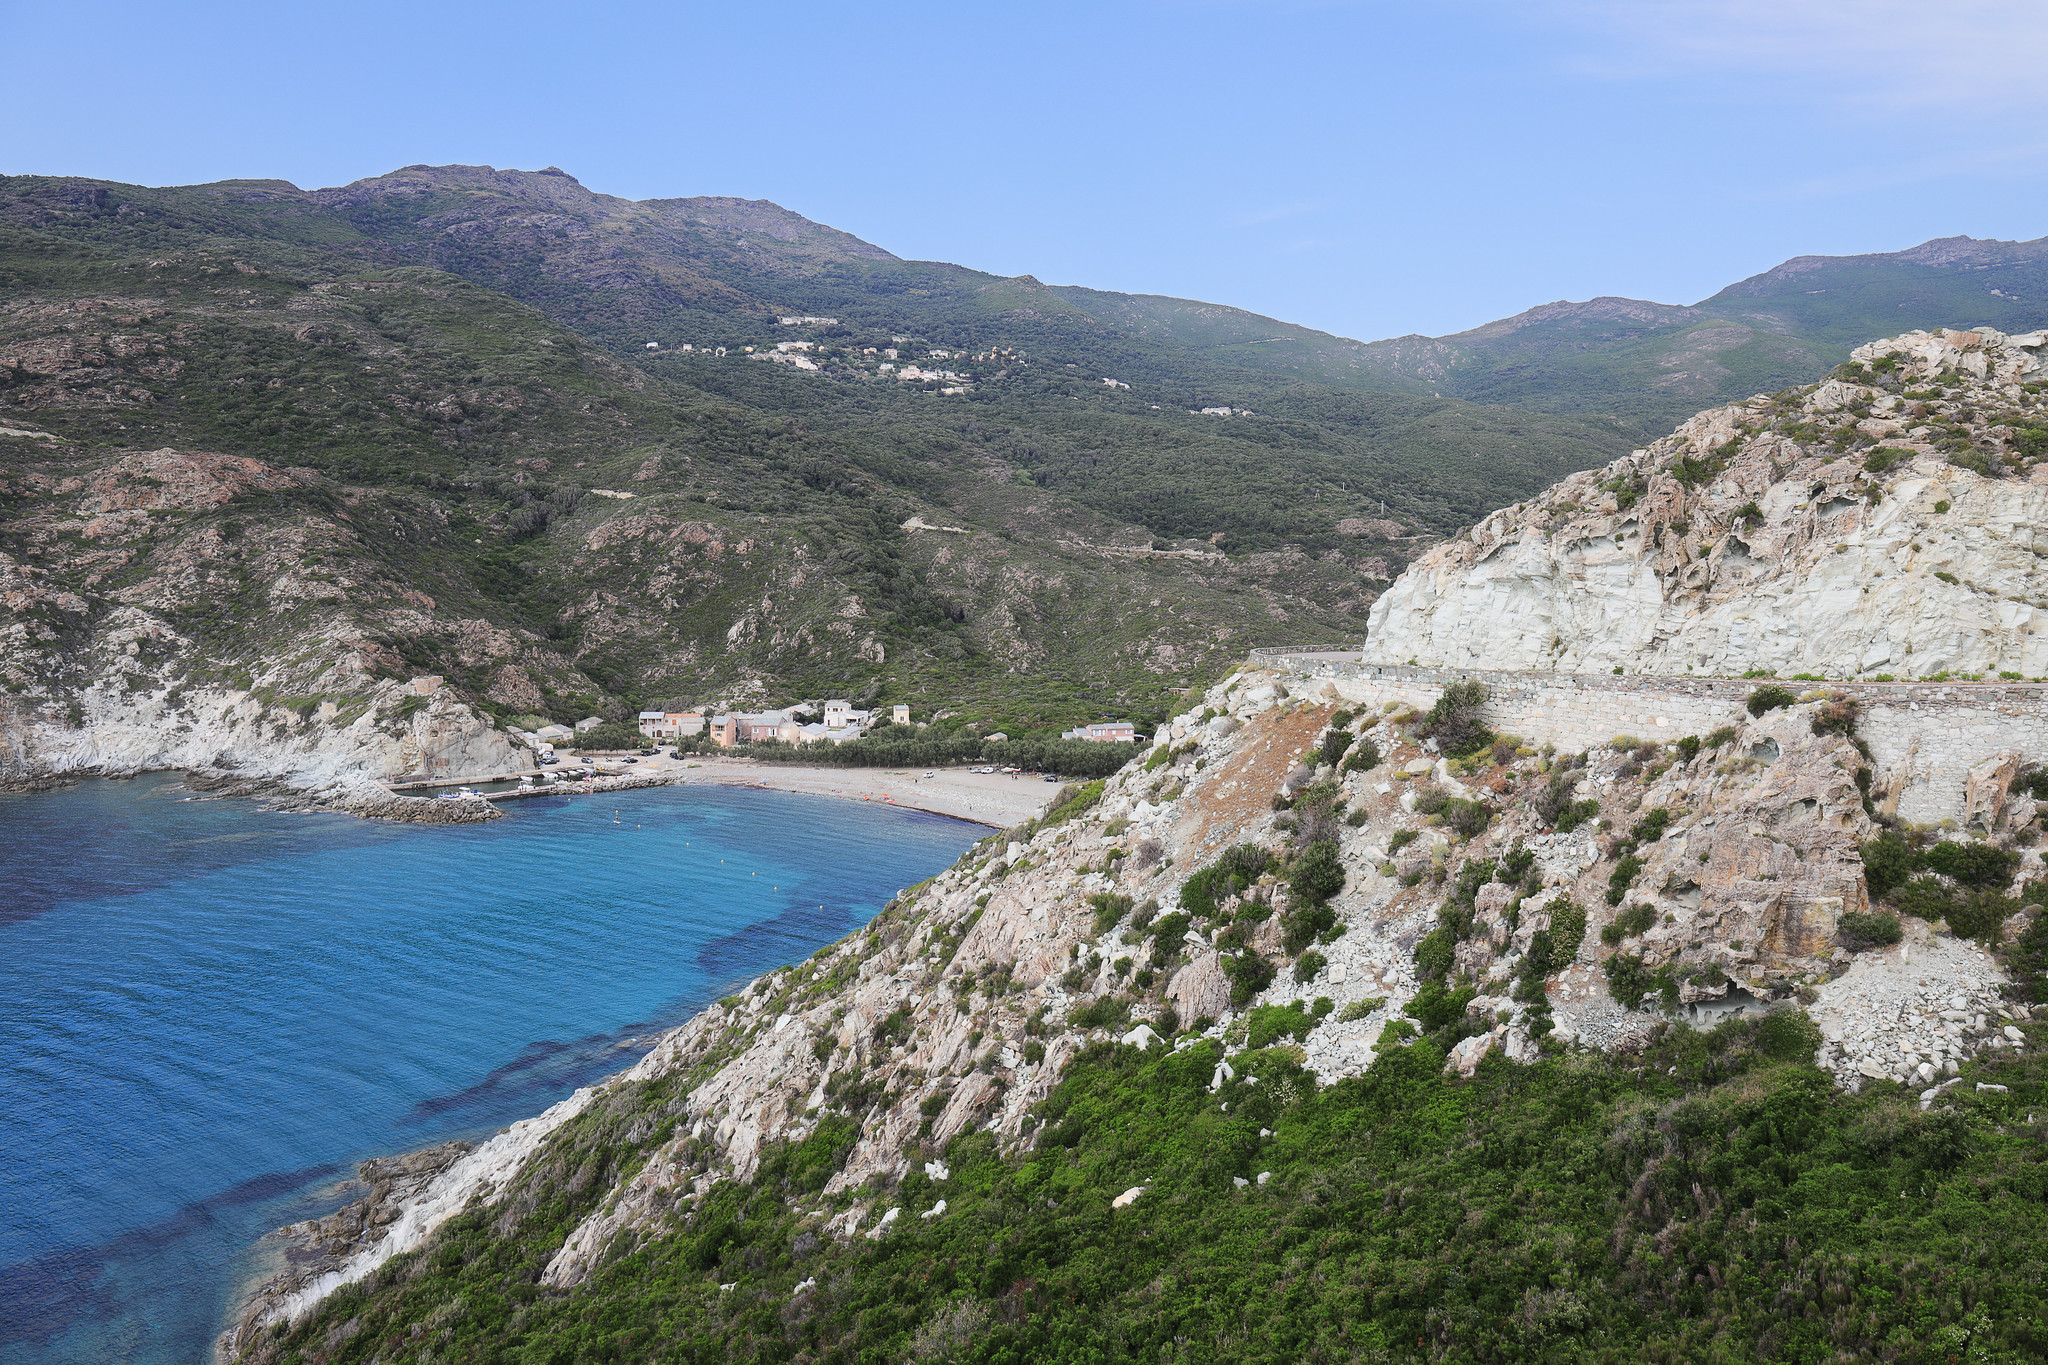 Paysage du Cap Corse avec route, montagnes, habitations et une plage